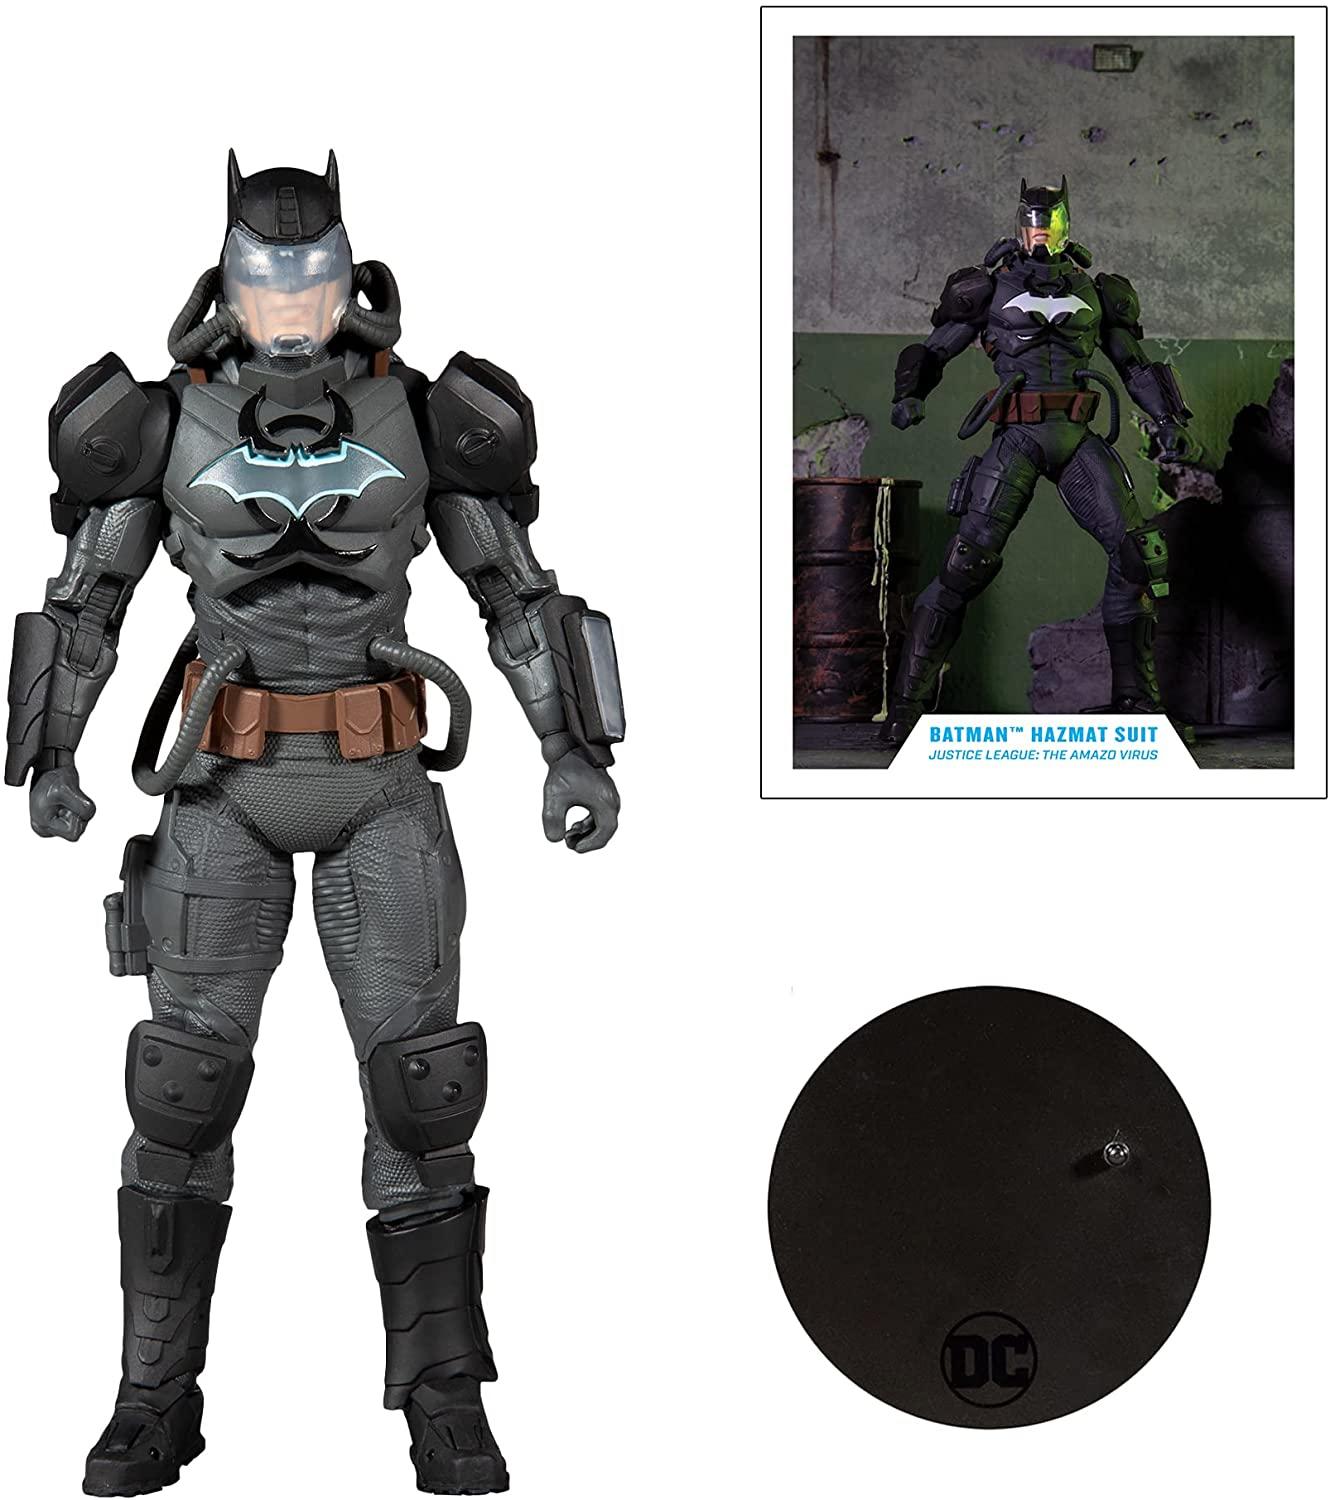 15005-6 for sale online McFarlane Toys Batman 7 inch Action Figure 